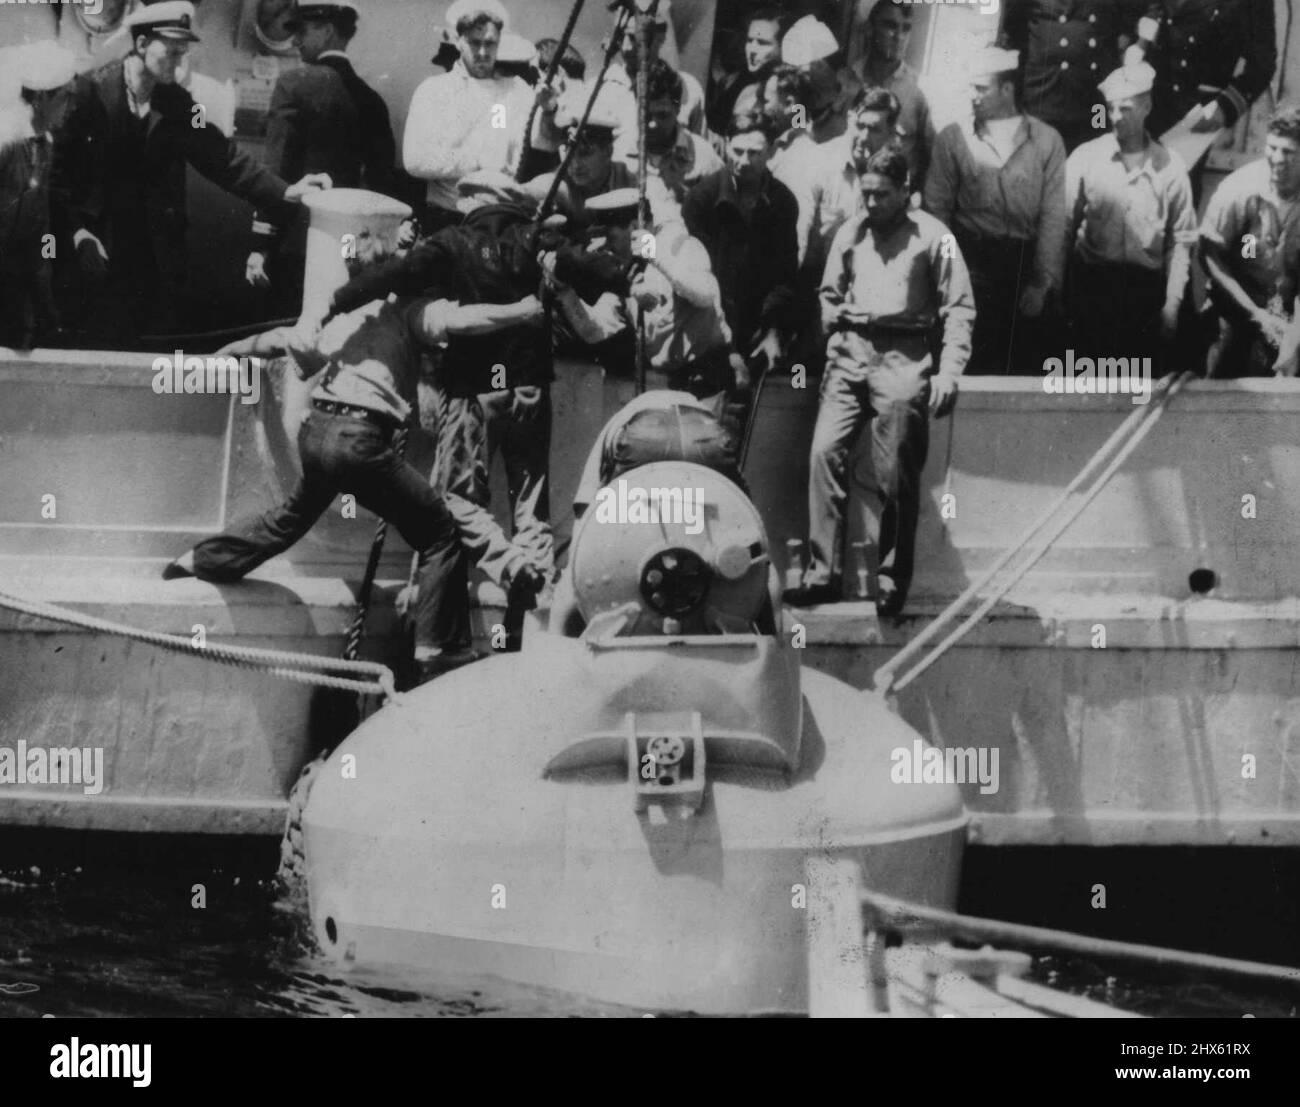 Erste Originalbilder, die in Australien von der Rettung von 32 Überlebenden aus dem US-U-Boot Squalus veröffentlicht werden. Mitglieder der Besatzung werden von der riesigen Stahltauchglocke gehoben, nachdem sie vom Rettungsschiff Falcon an die Oberfläche geschleppt wurde. 8. Juni 1939. (Foto von Associated Press Ltd.) Stockfoto